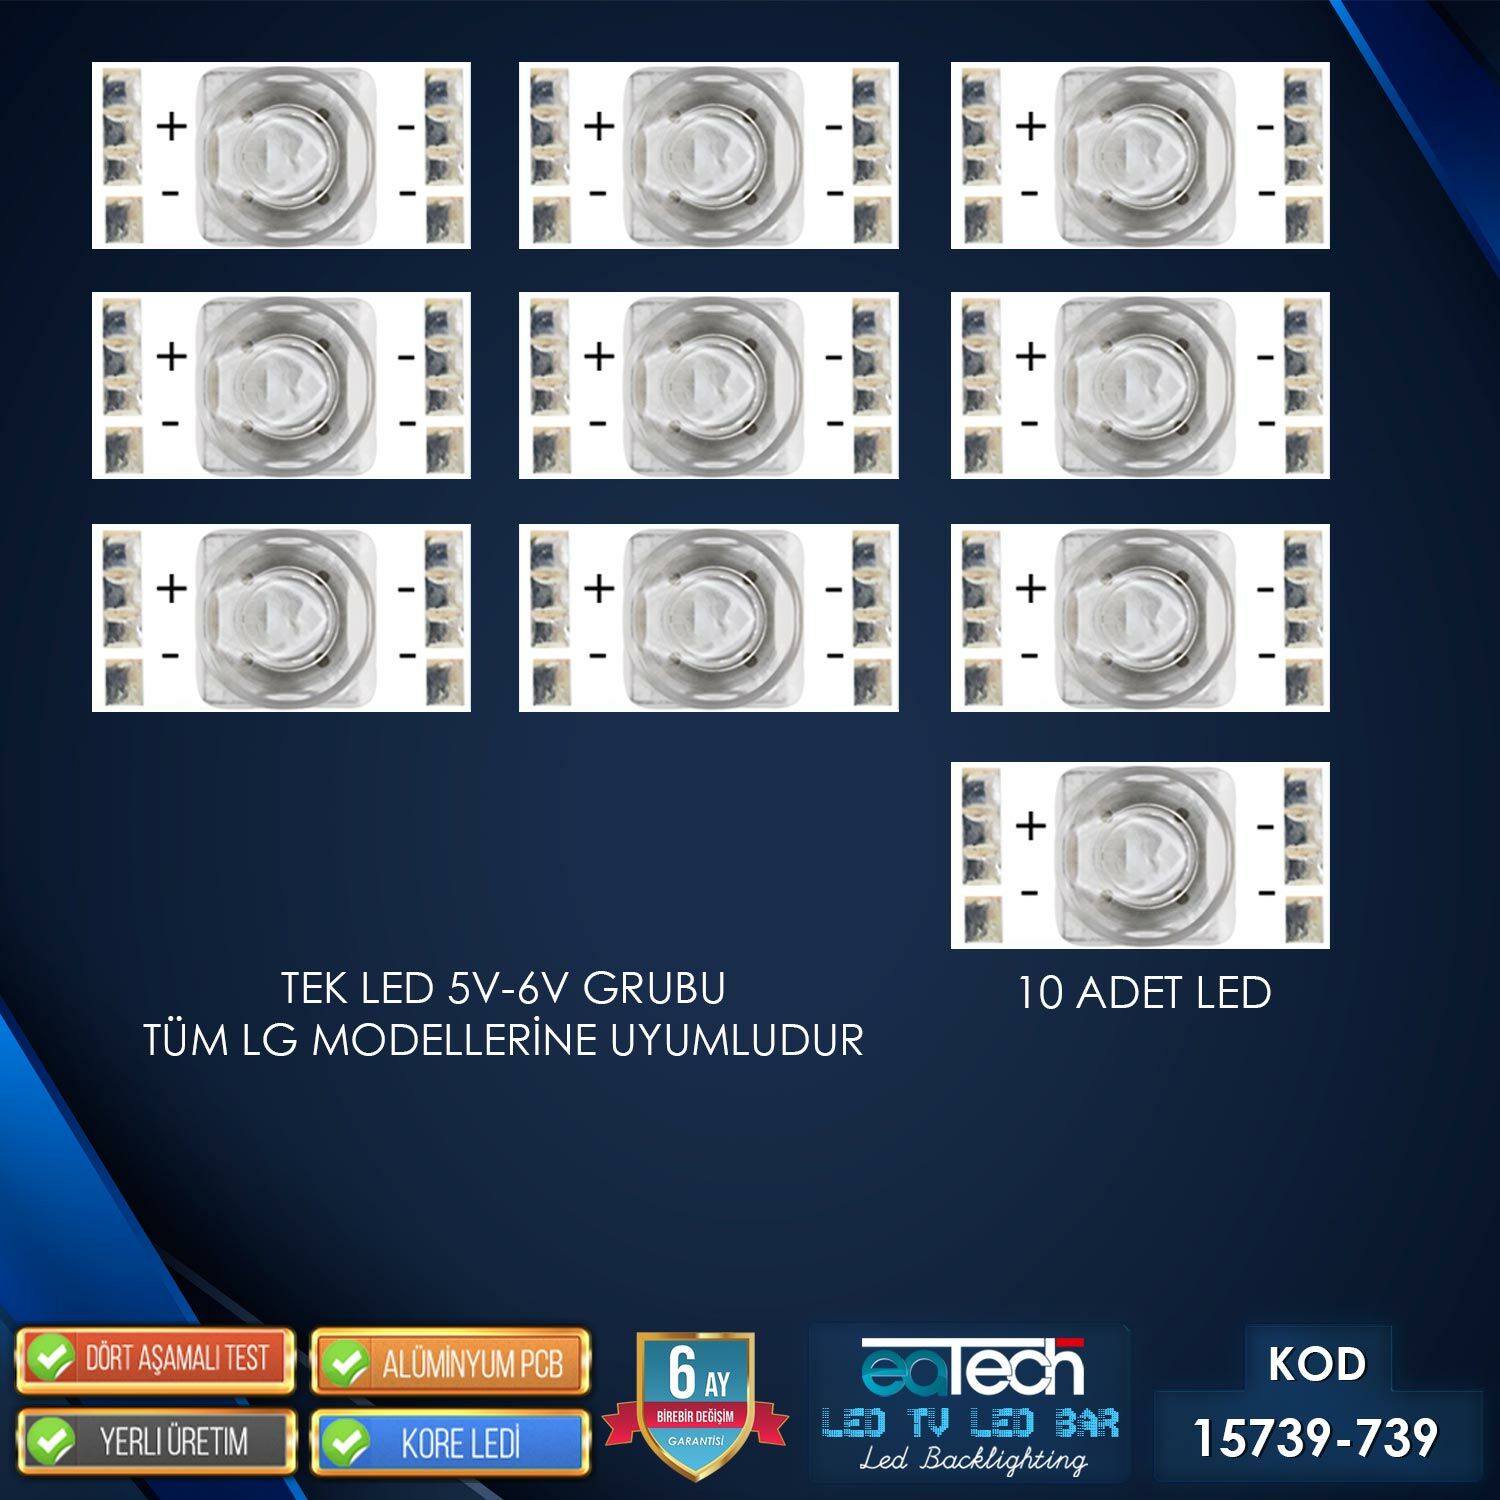 KOD-739 TEKLİ TV LED 6V (LG TÜM MODELLER) (10 ADET)